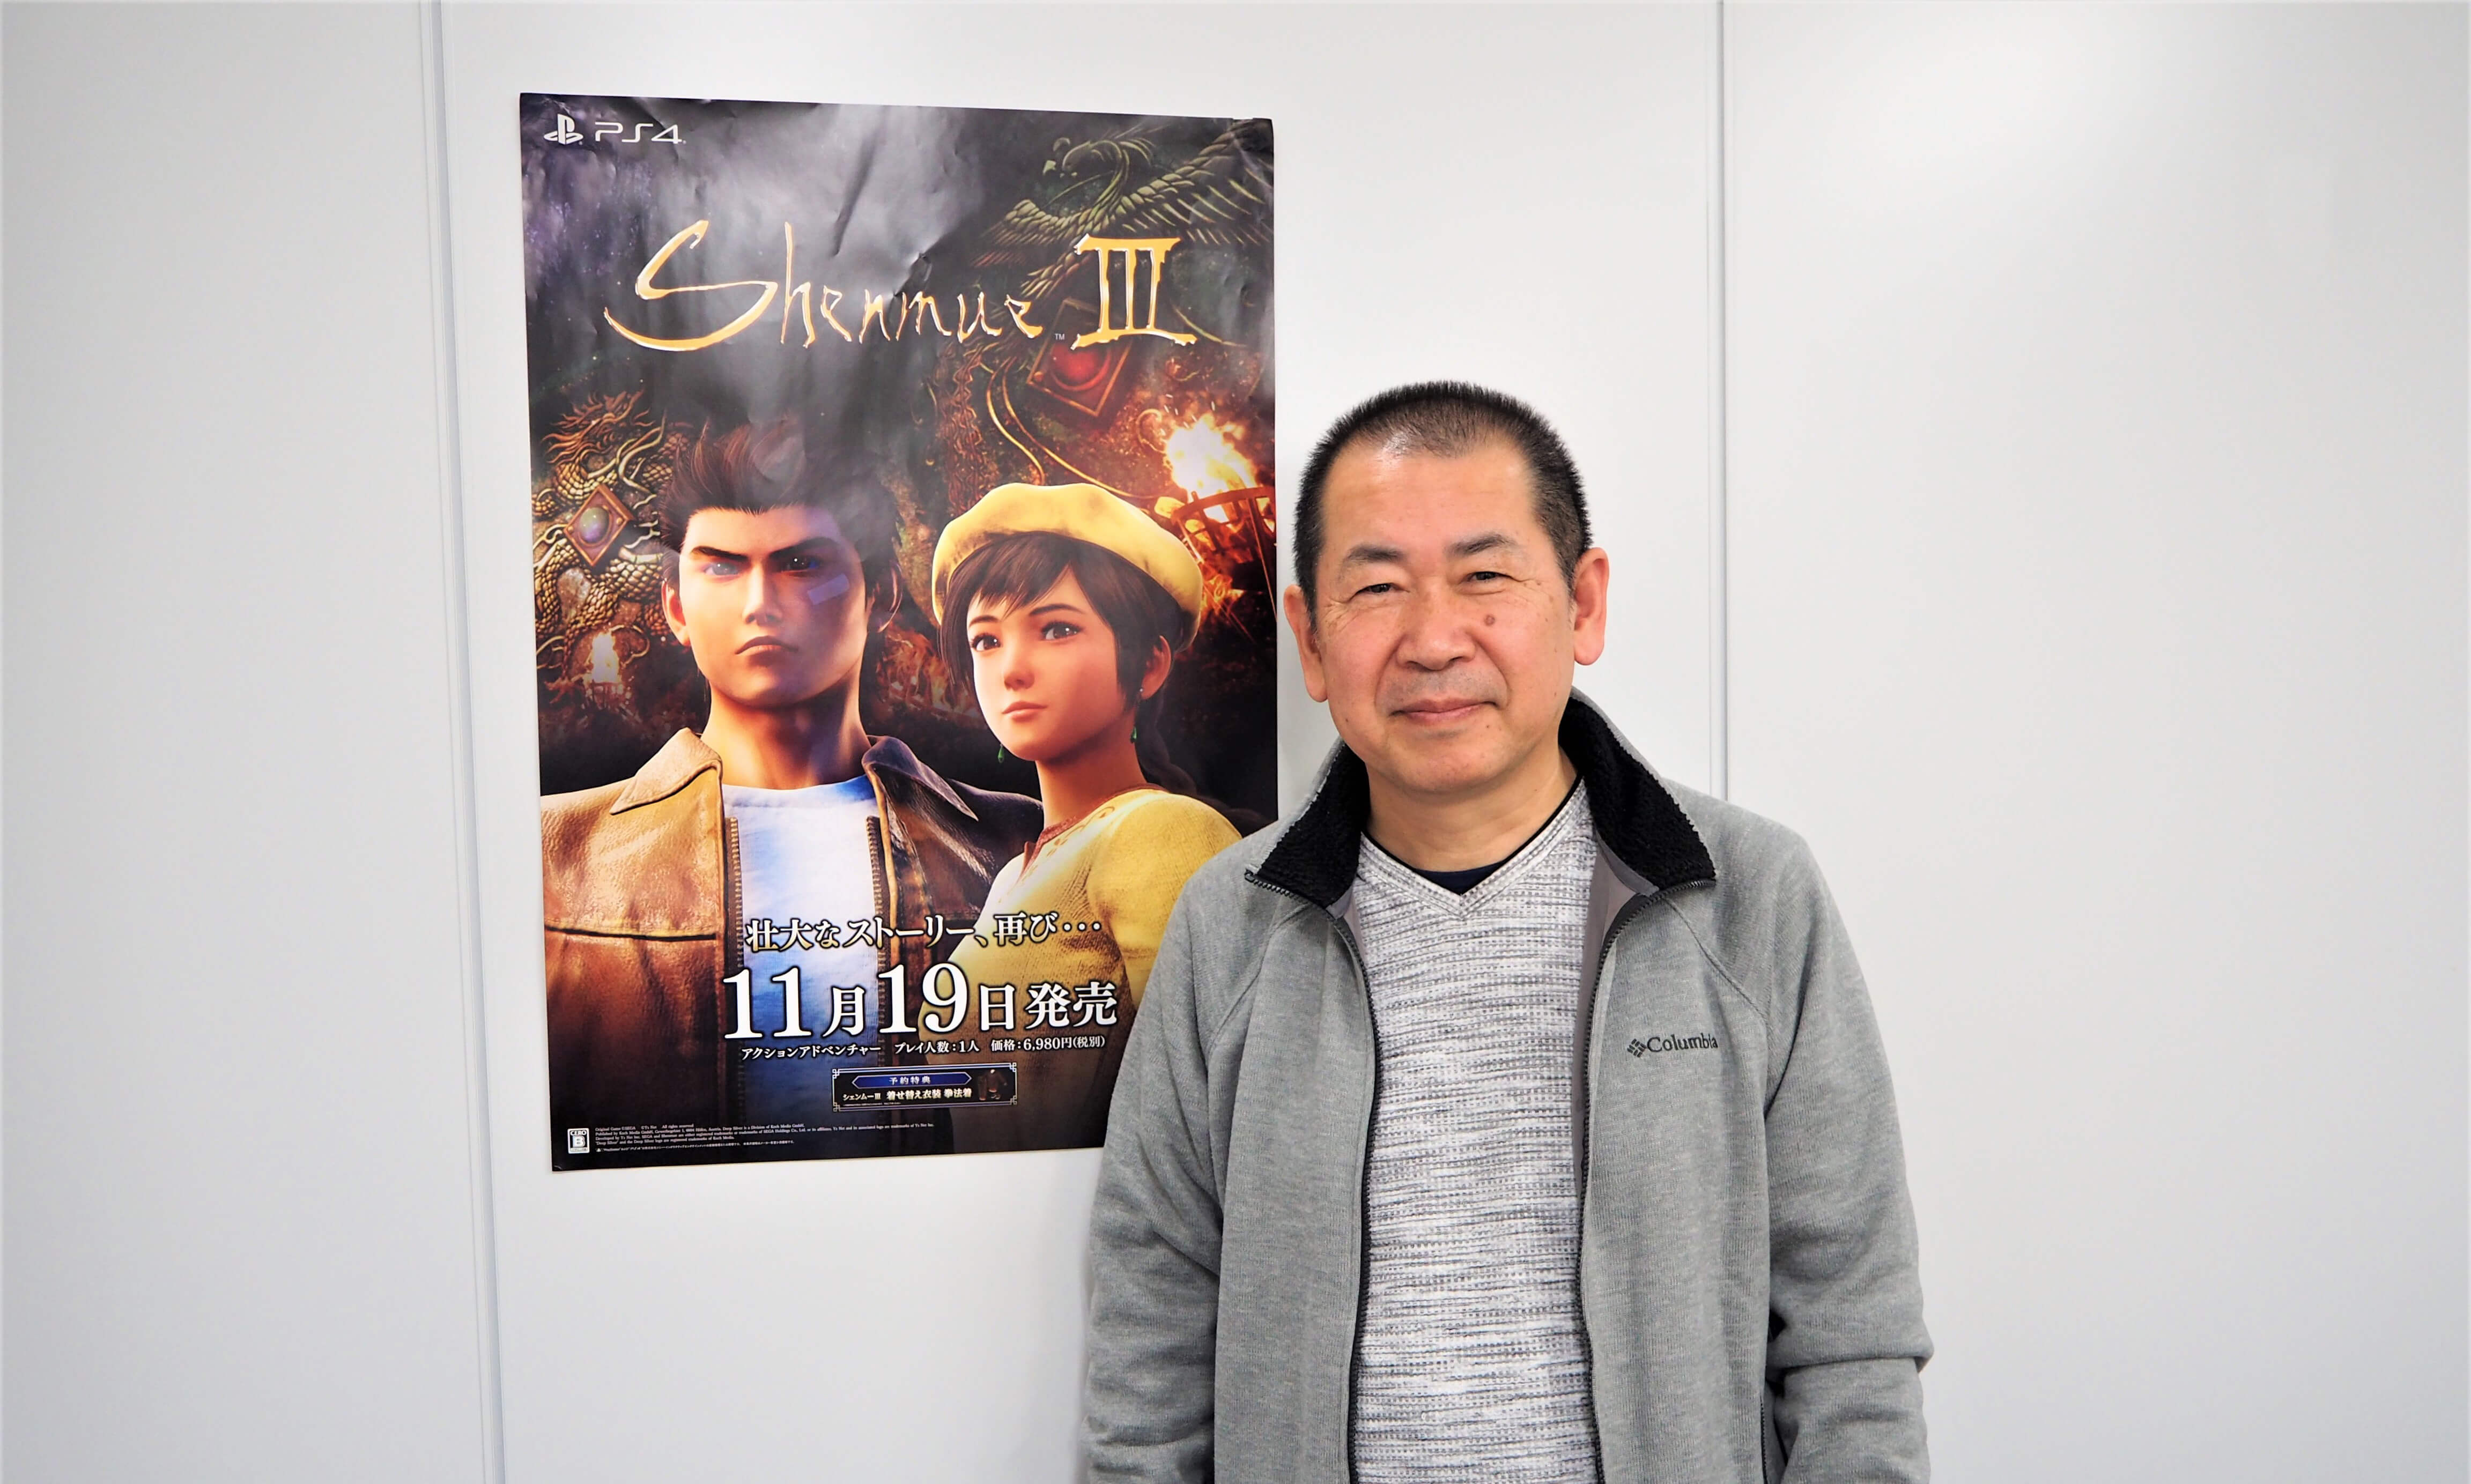 前編 バーチャファイター シェンムー を生み出した伝説のゲームクリエイター 鈴木裕氏へインタビュー